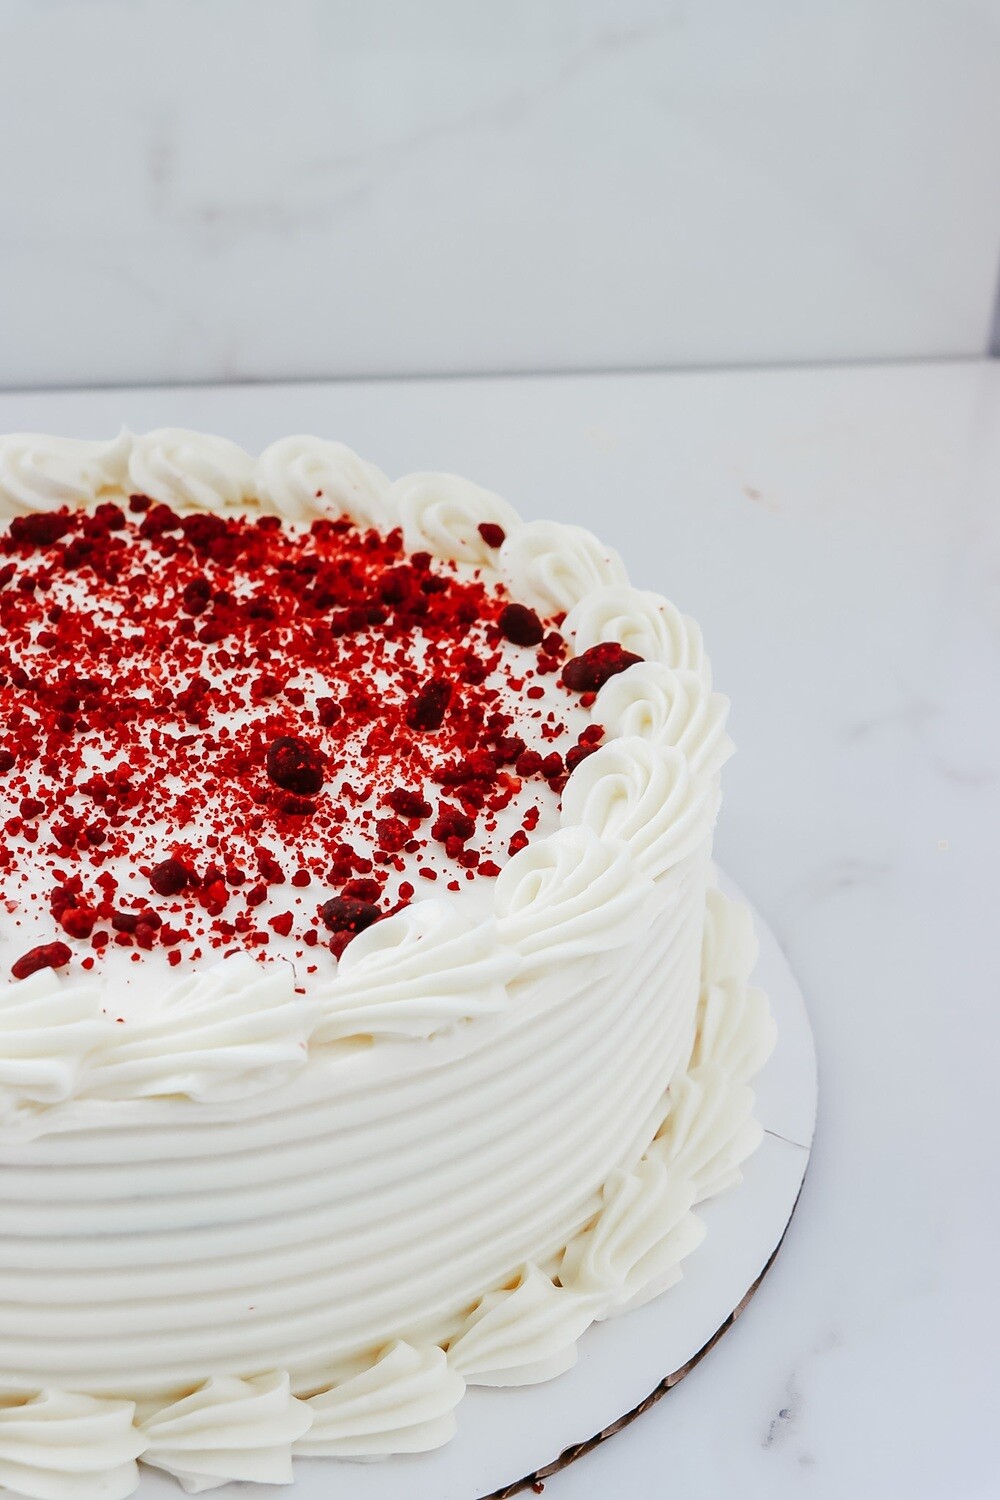 RED VELVET QUICK CAKE